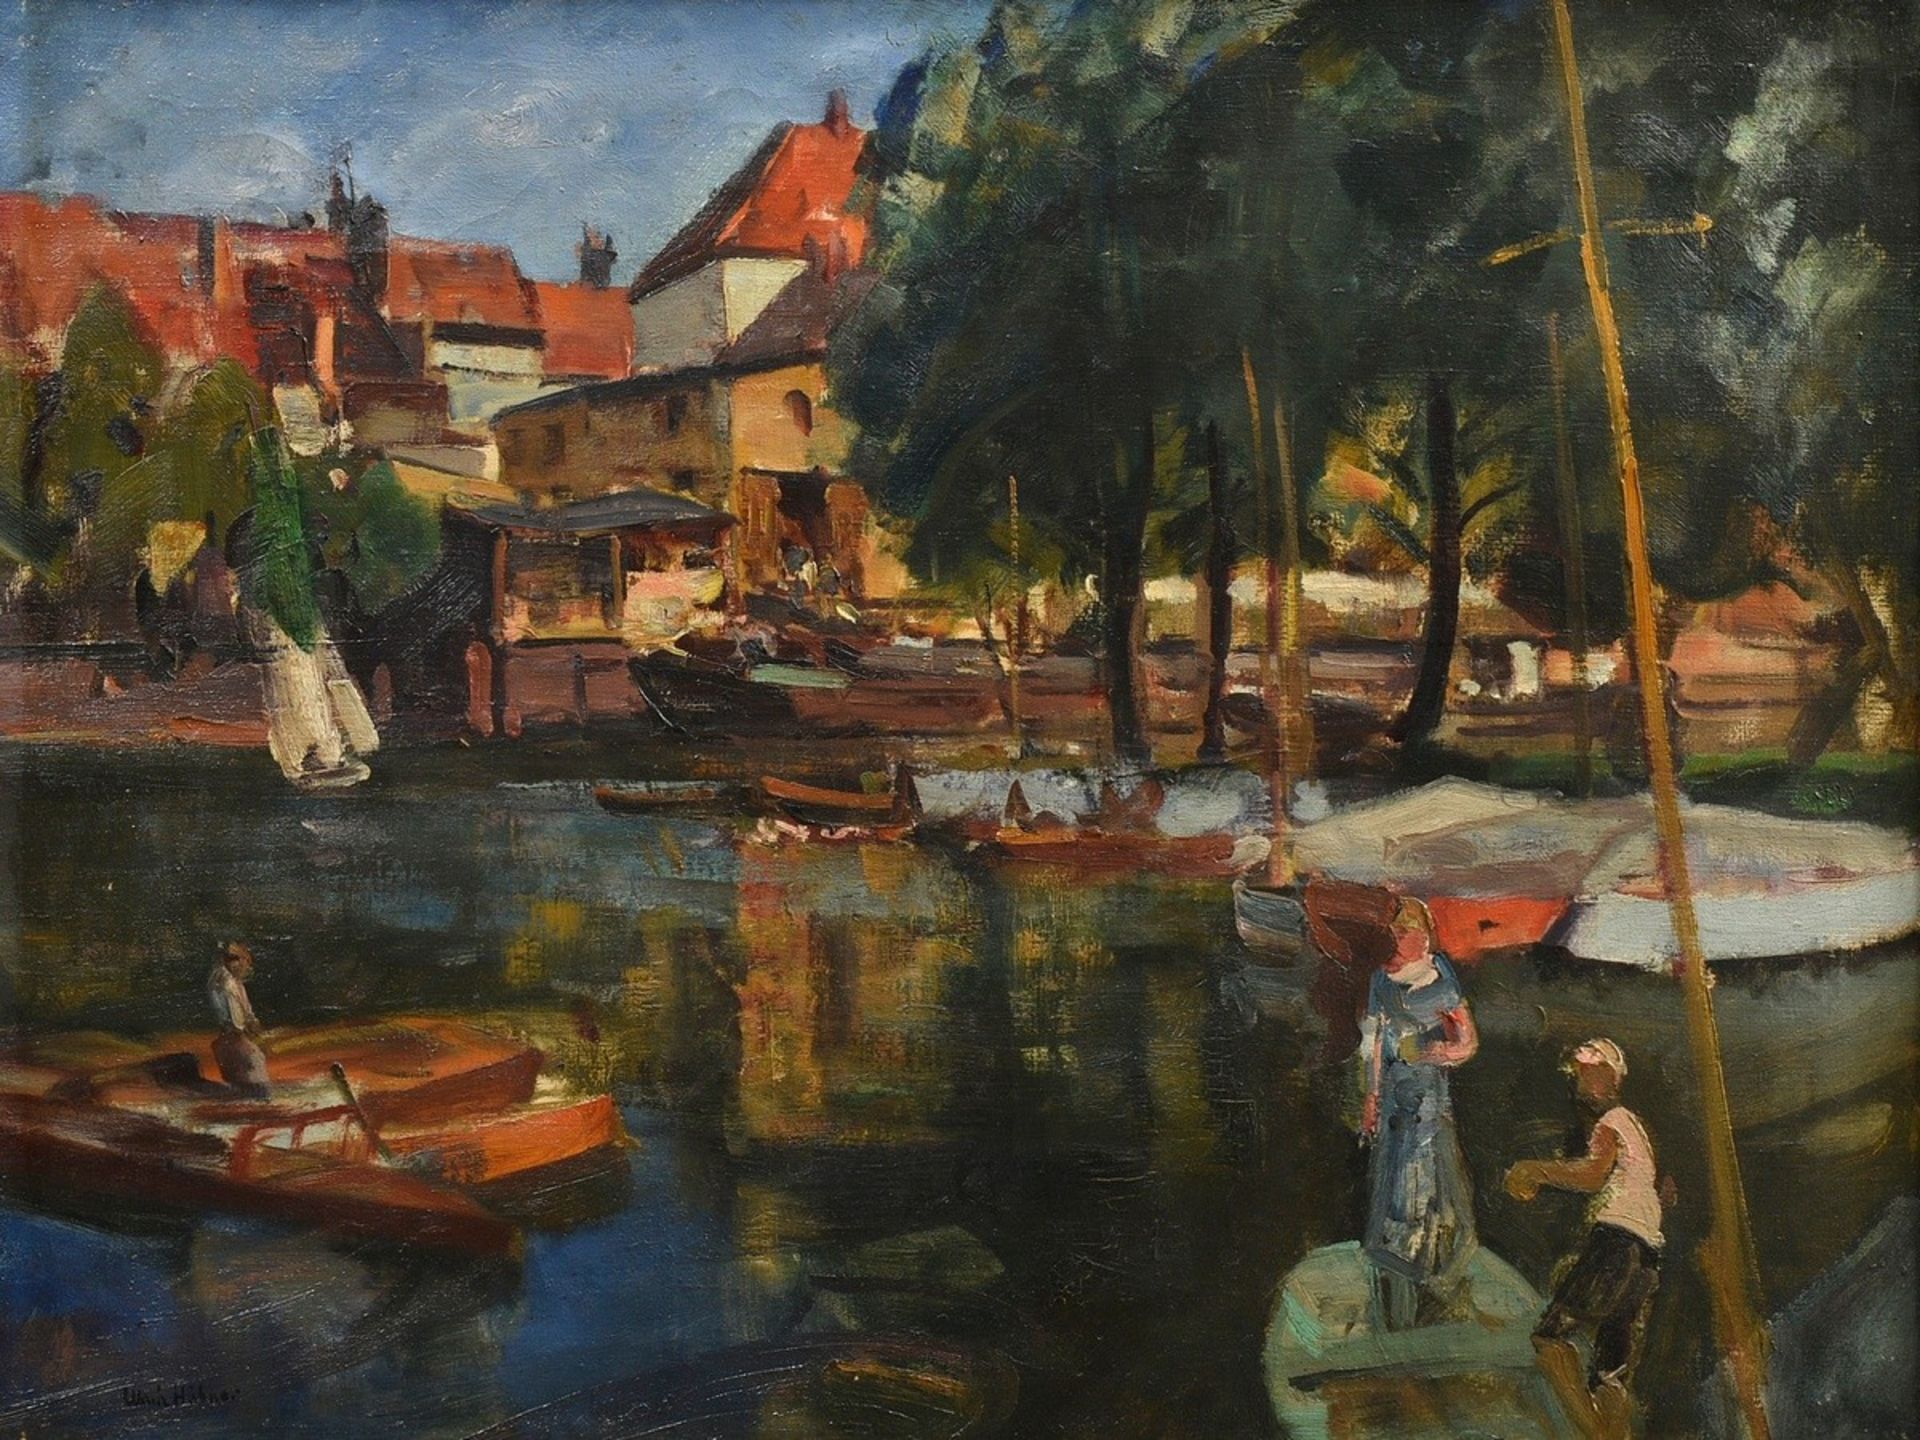 Hübner, Ulrich (1872-1932) "Bootssteg im Sommer" Öl/Leinwand, u.l. sign., 69,5x92,5cm (m.R. 86,5x11